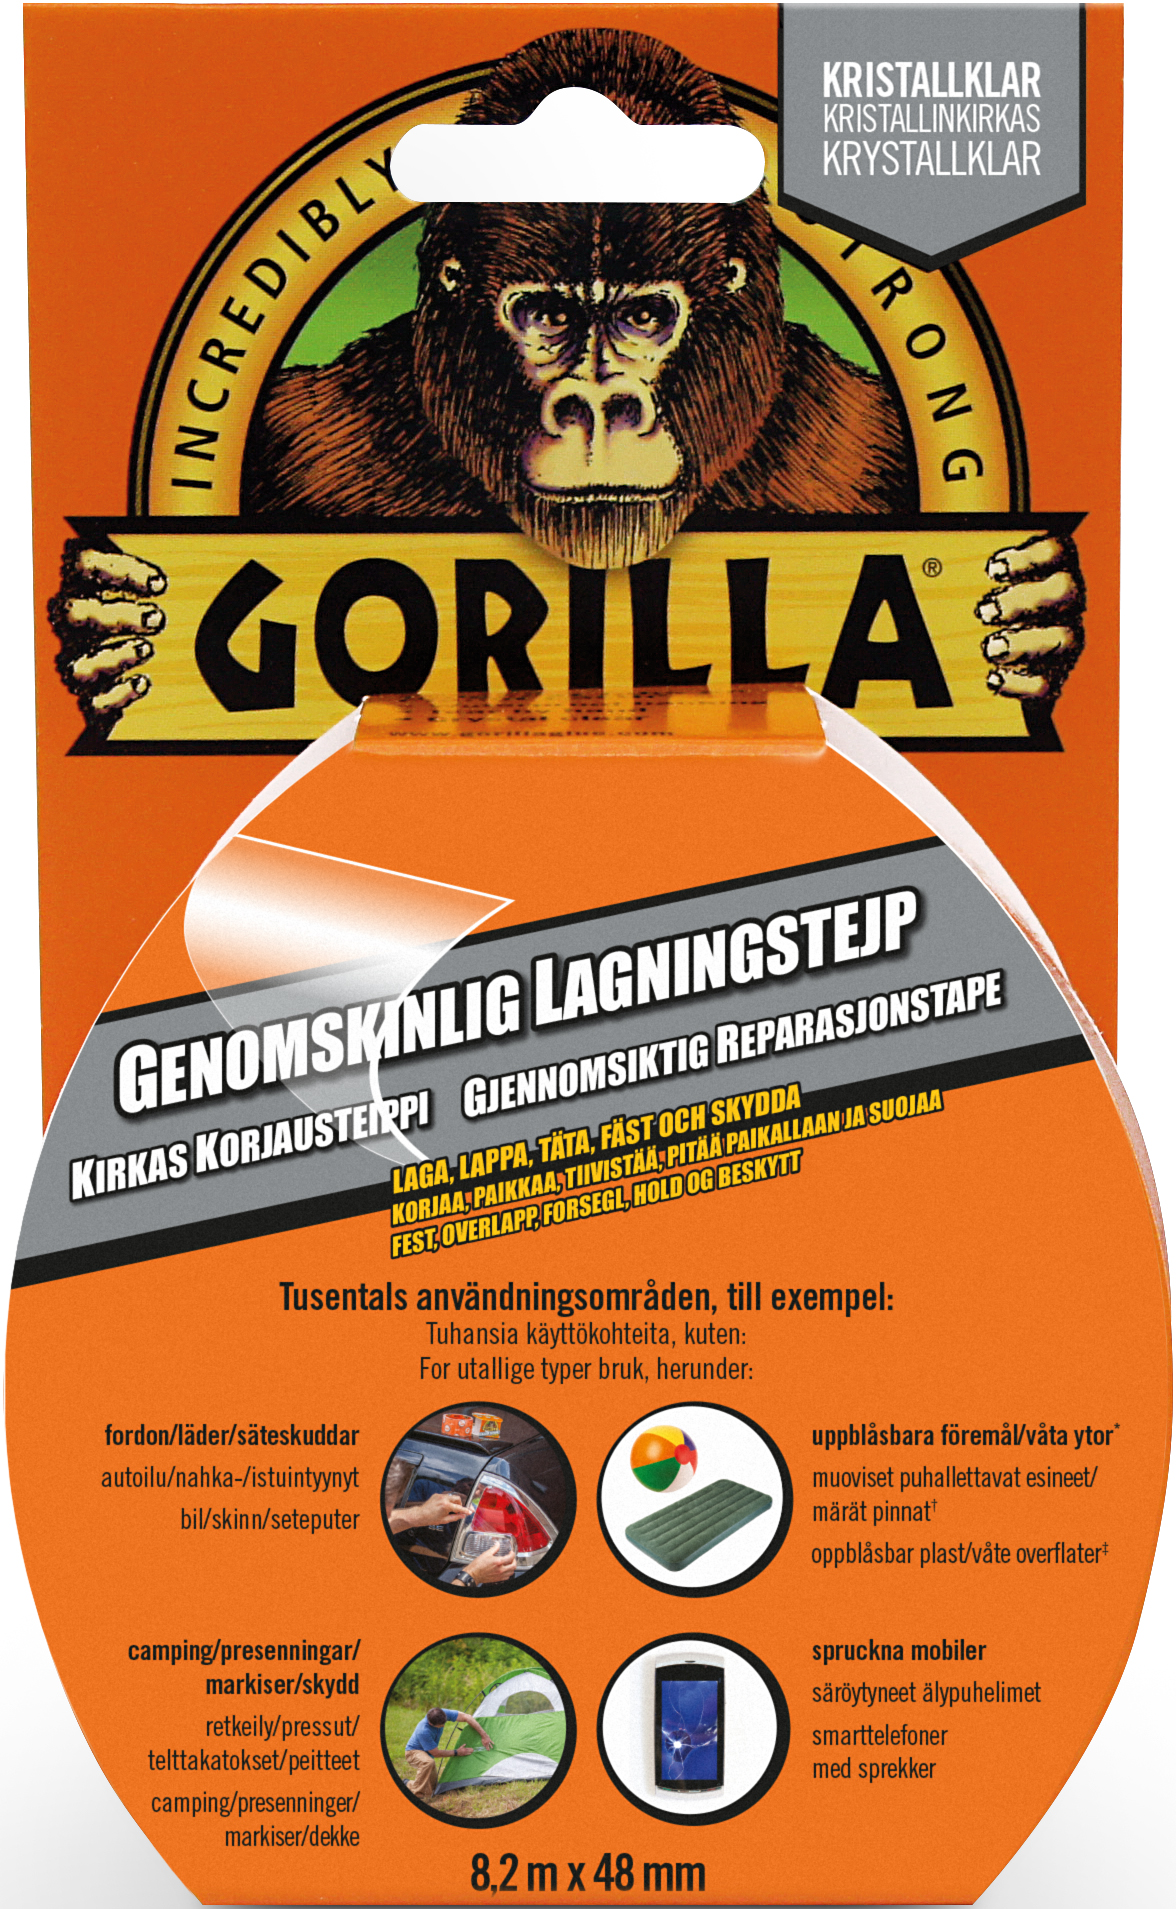 Gorilla Tape Genomskinlig Lagningstejp 8,2mx48mm